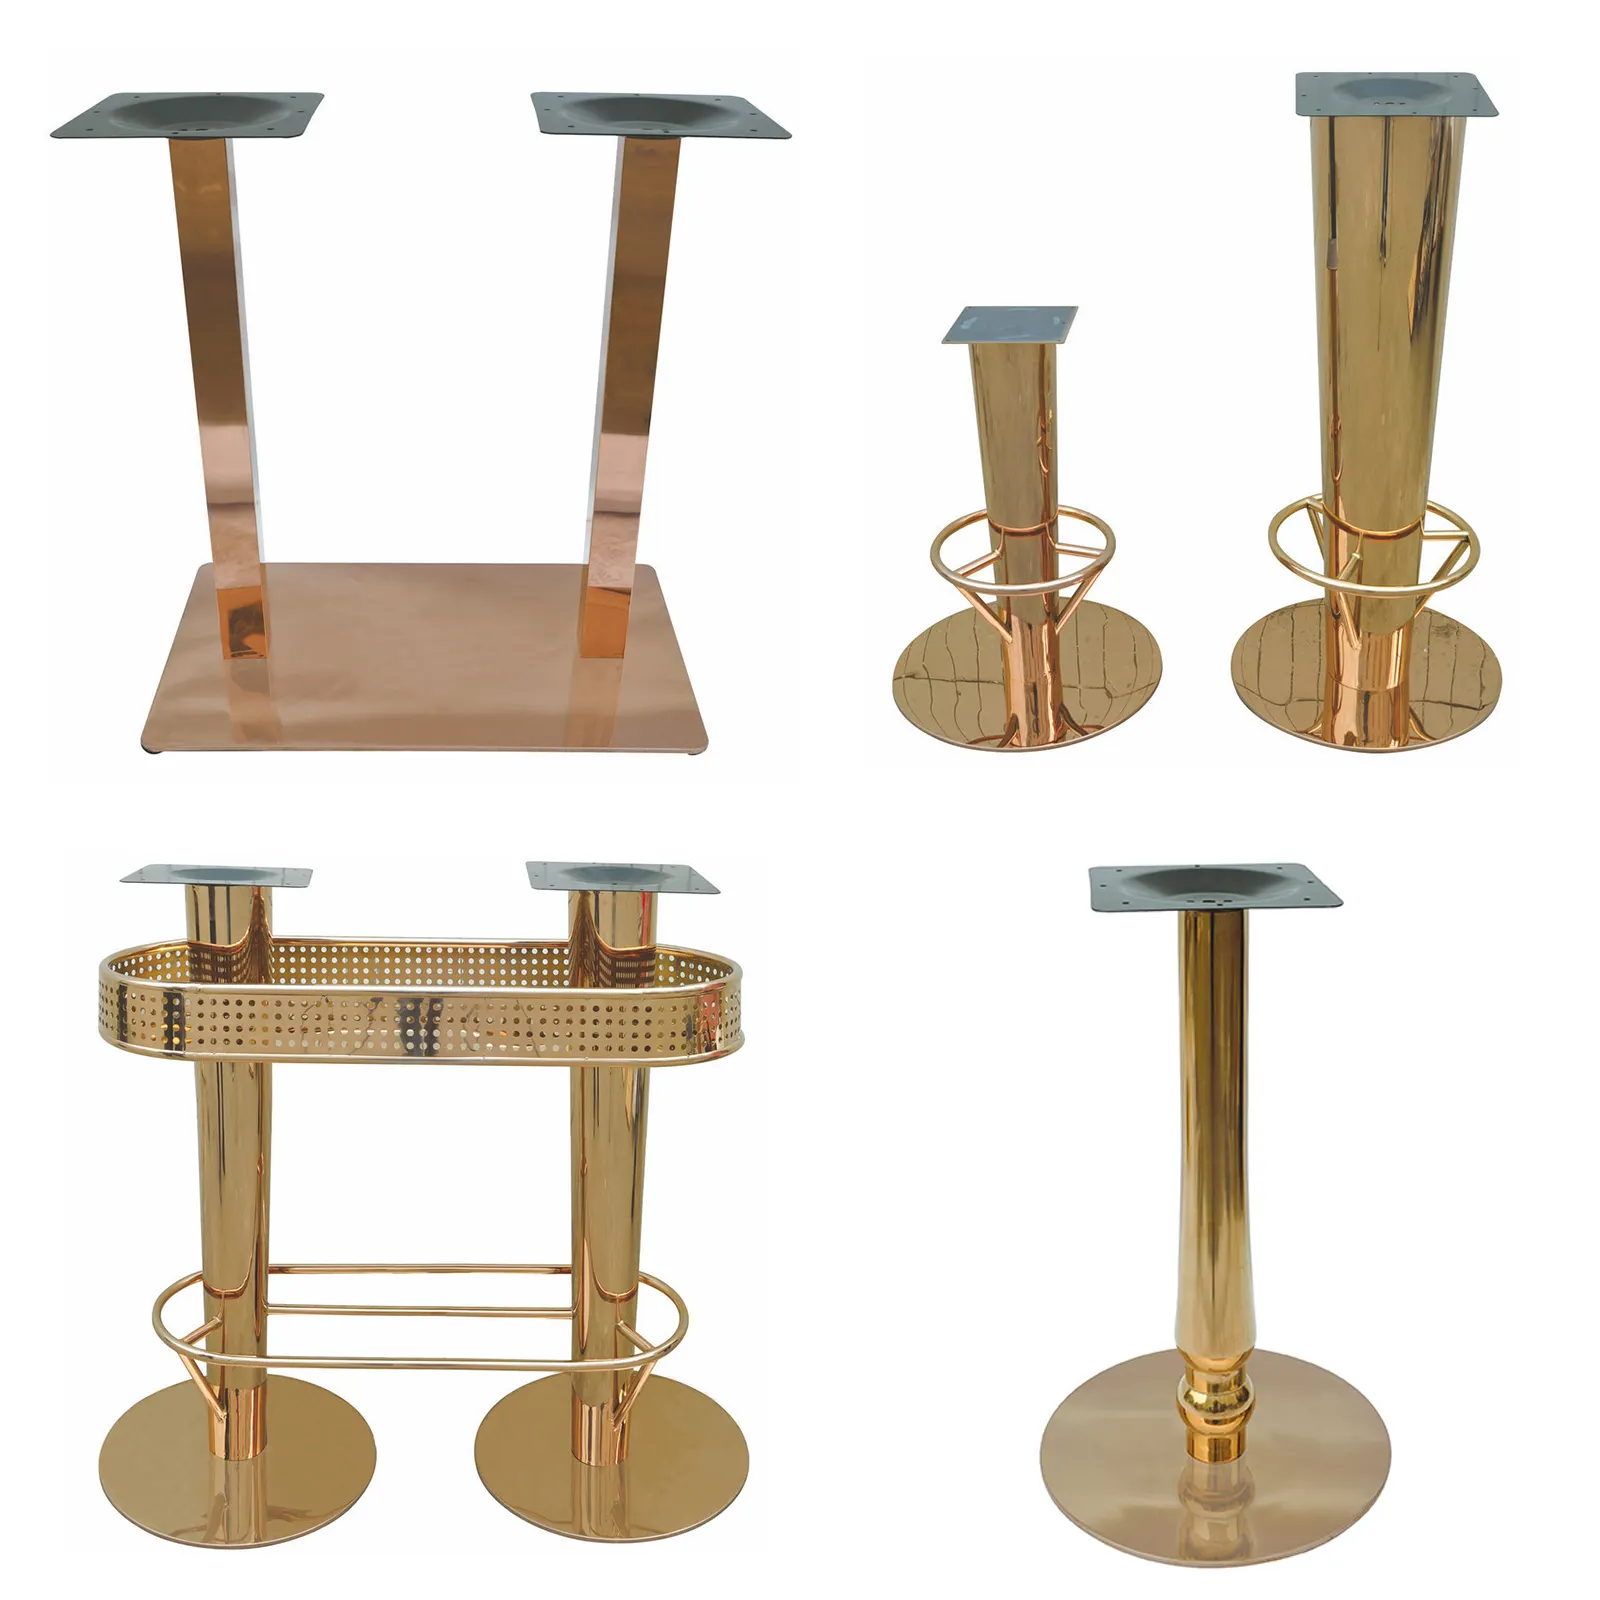 Base de mesa móveis mesa de jantar, perna escovada de aço inoxidável cromado moderno aço inoxidável bandeja de mesa industrial